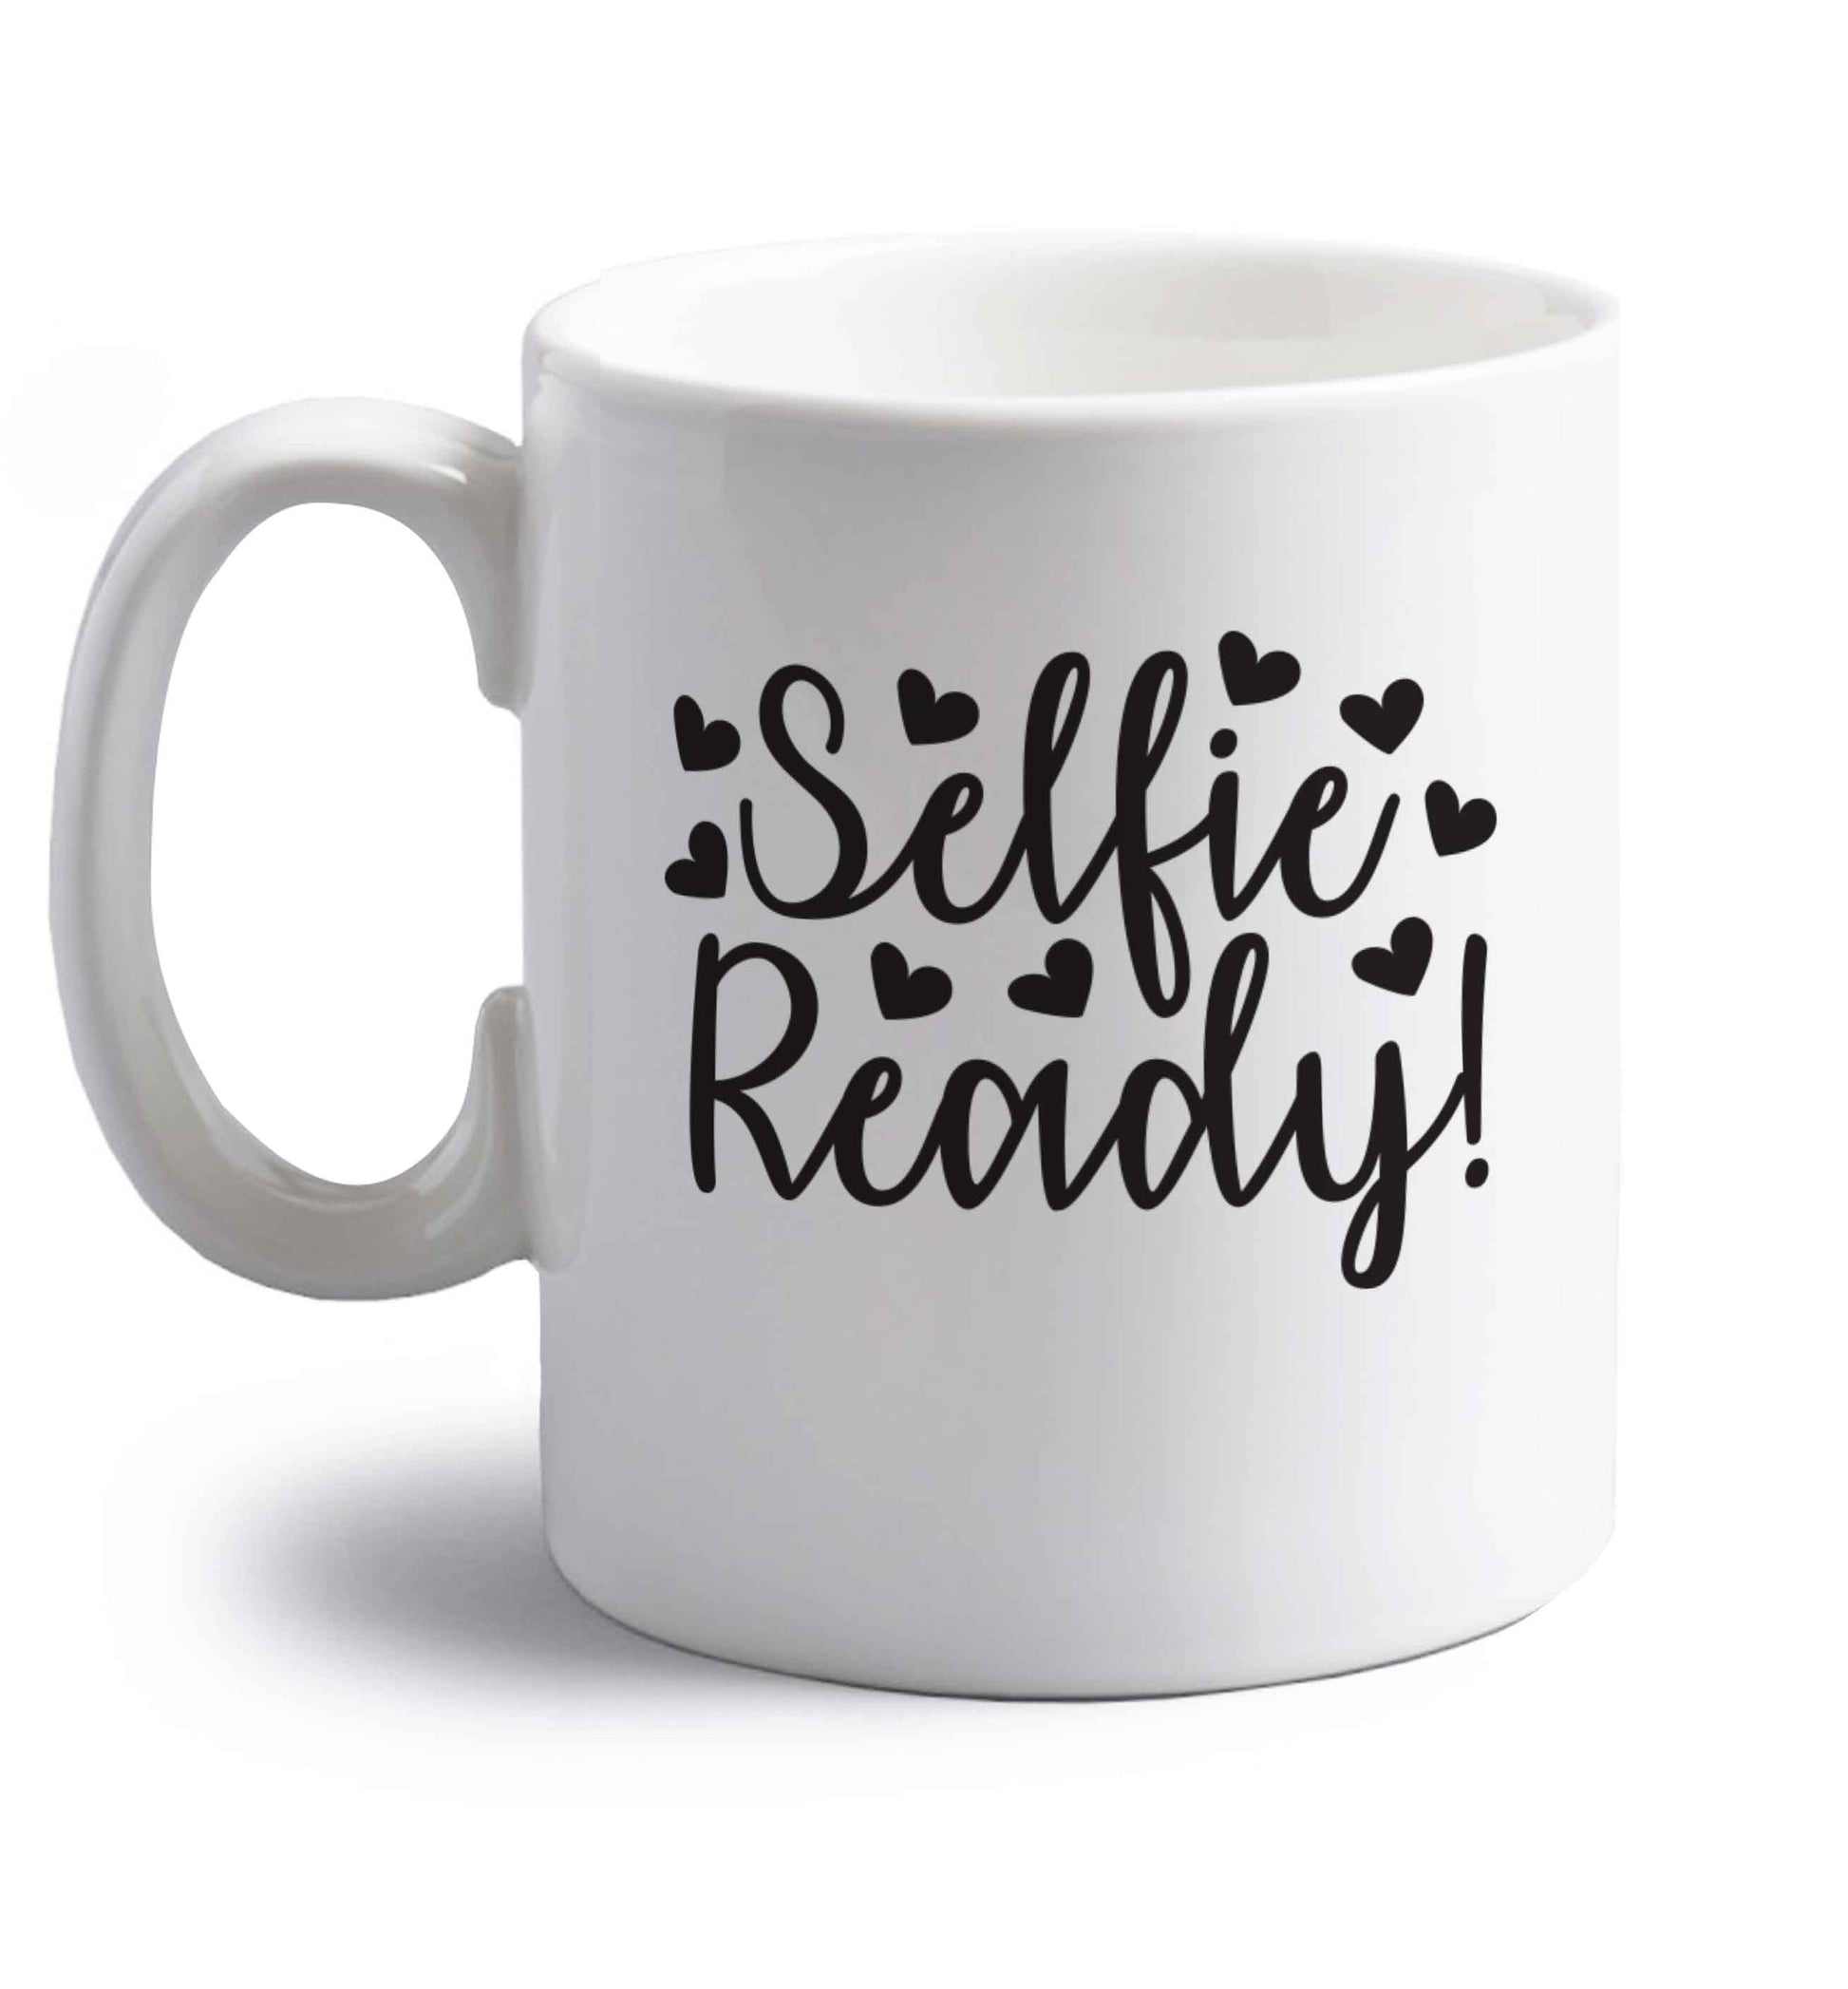 Selfie ready right handed white ceramic mug 